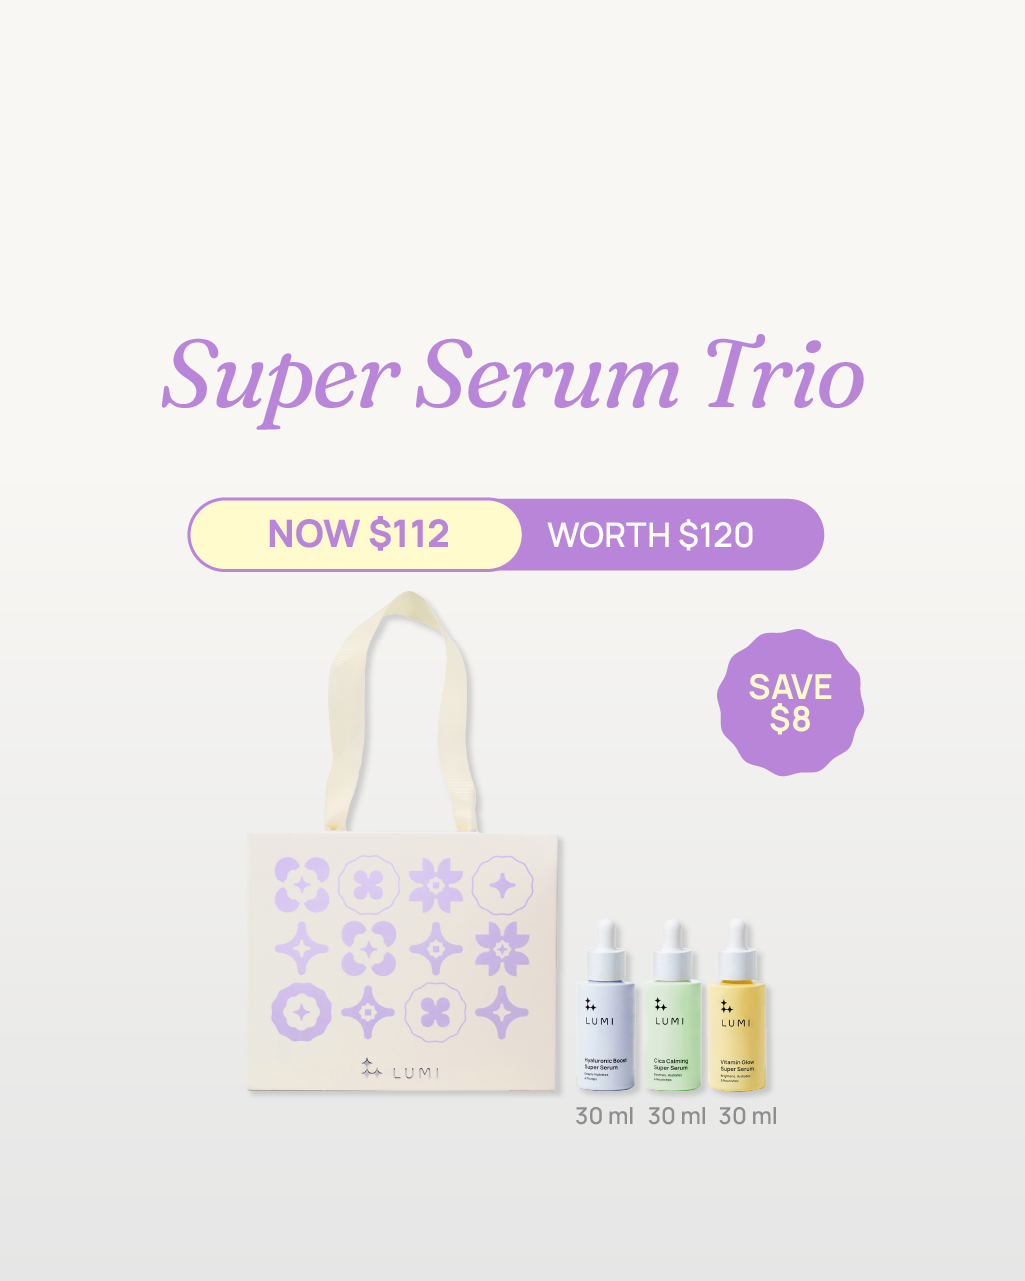 Super Serum Trio